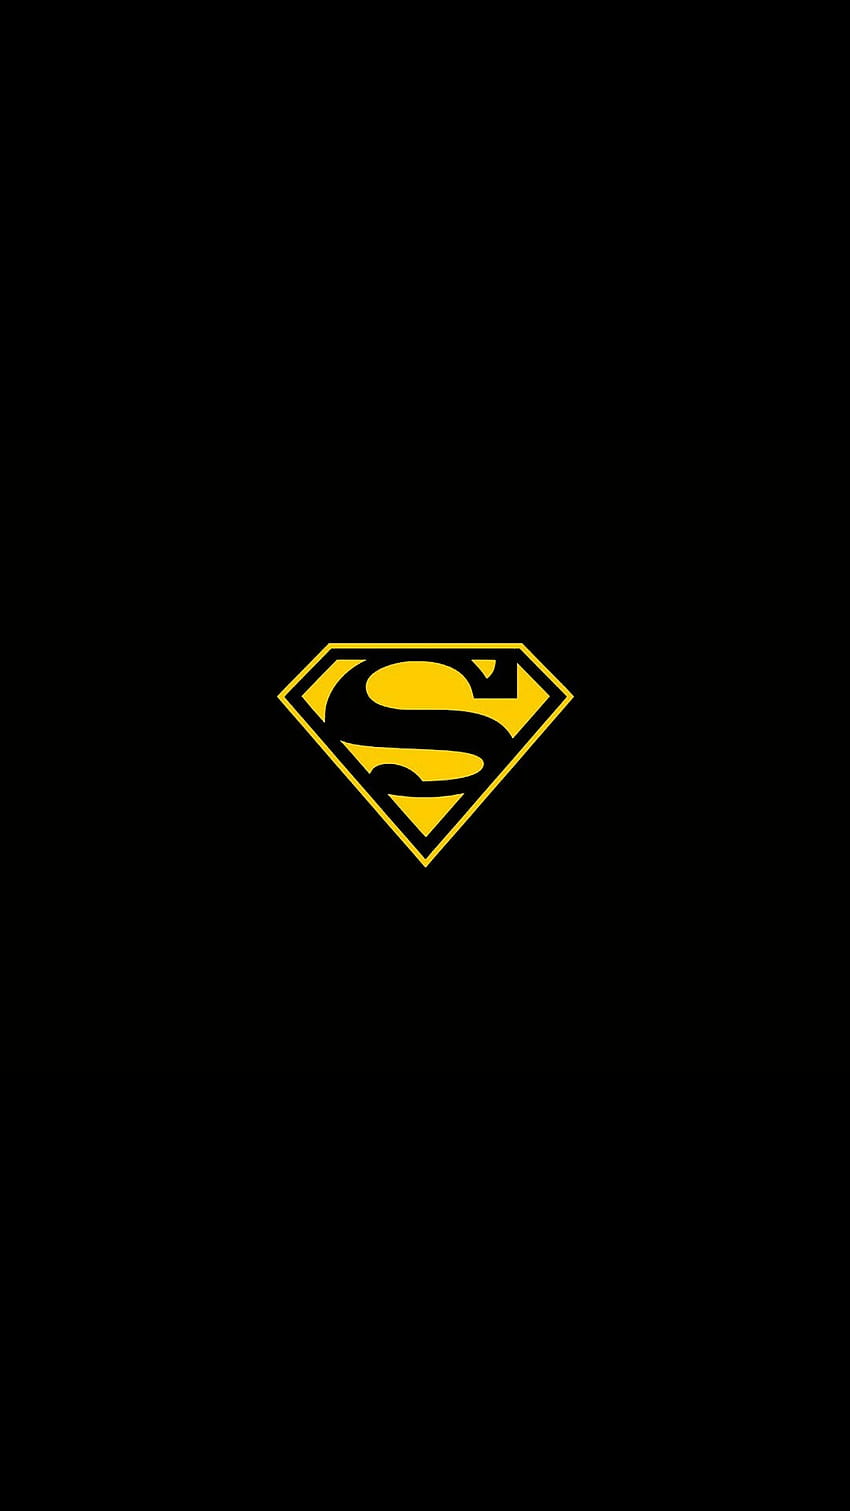 スーパーマン イエロー T シャツ ロゴ iPhone 6 Plus HD電話の壁紙